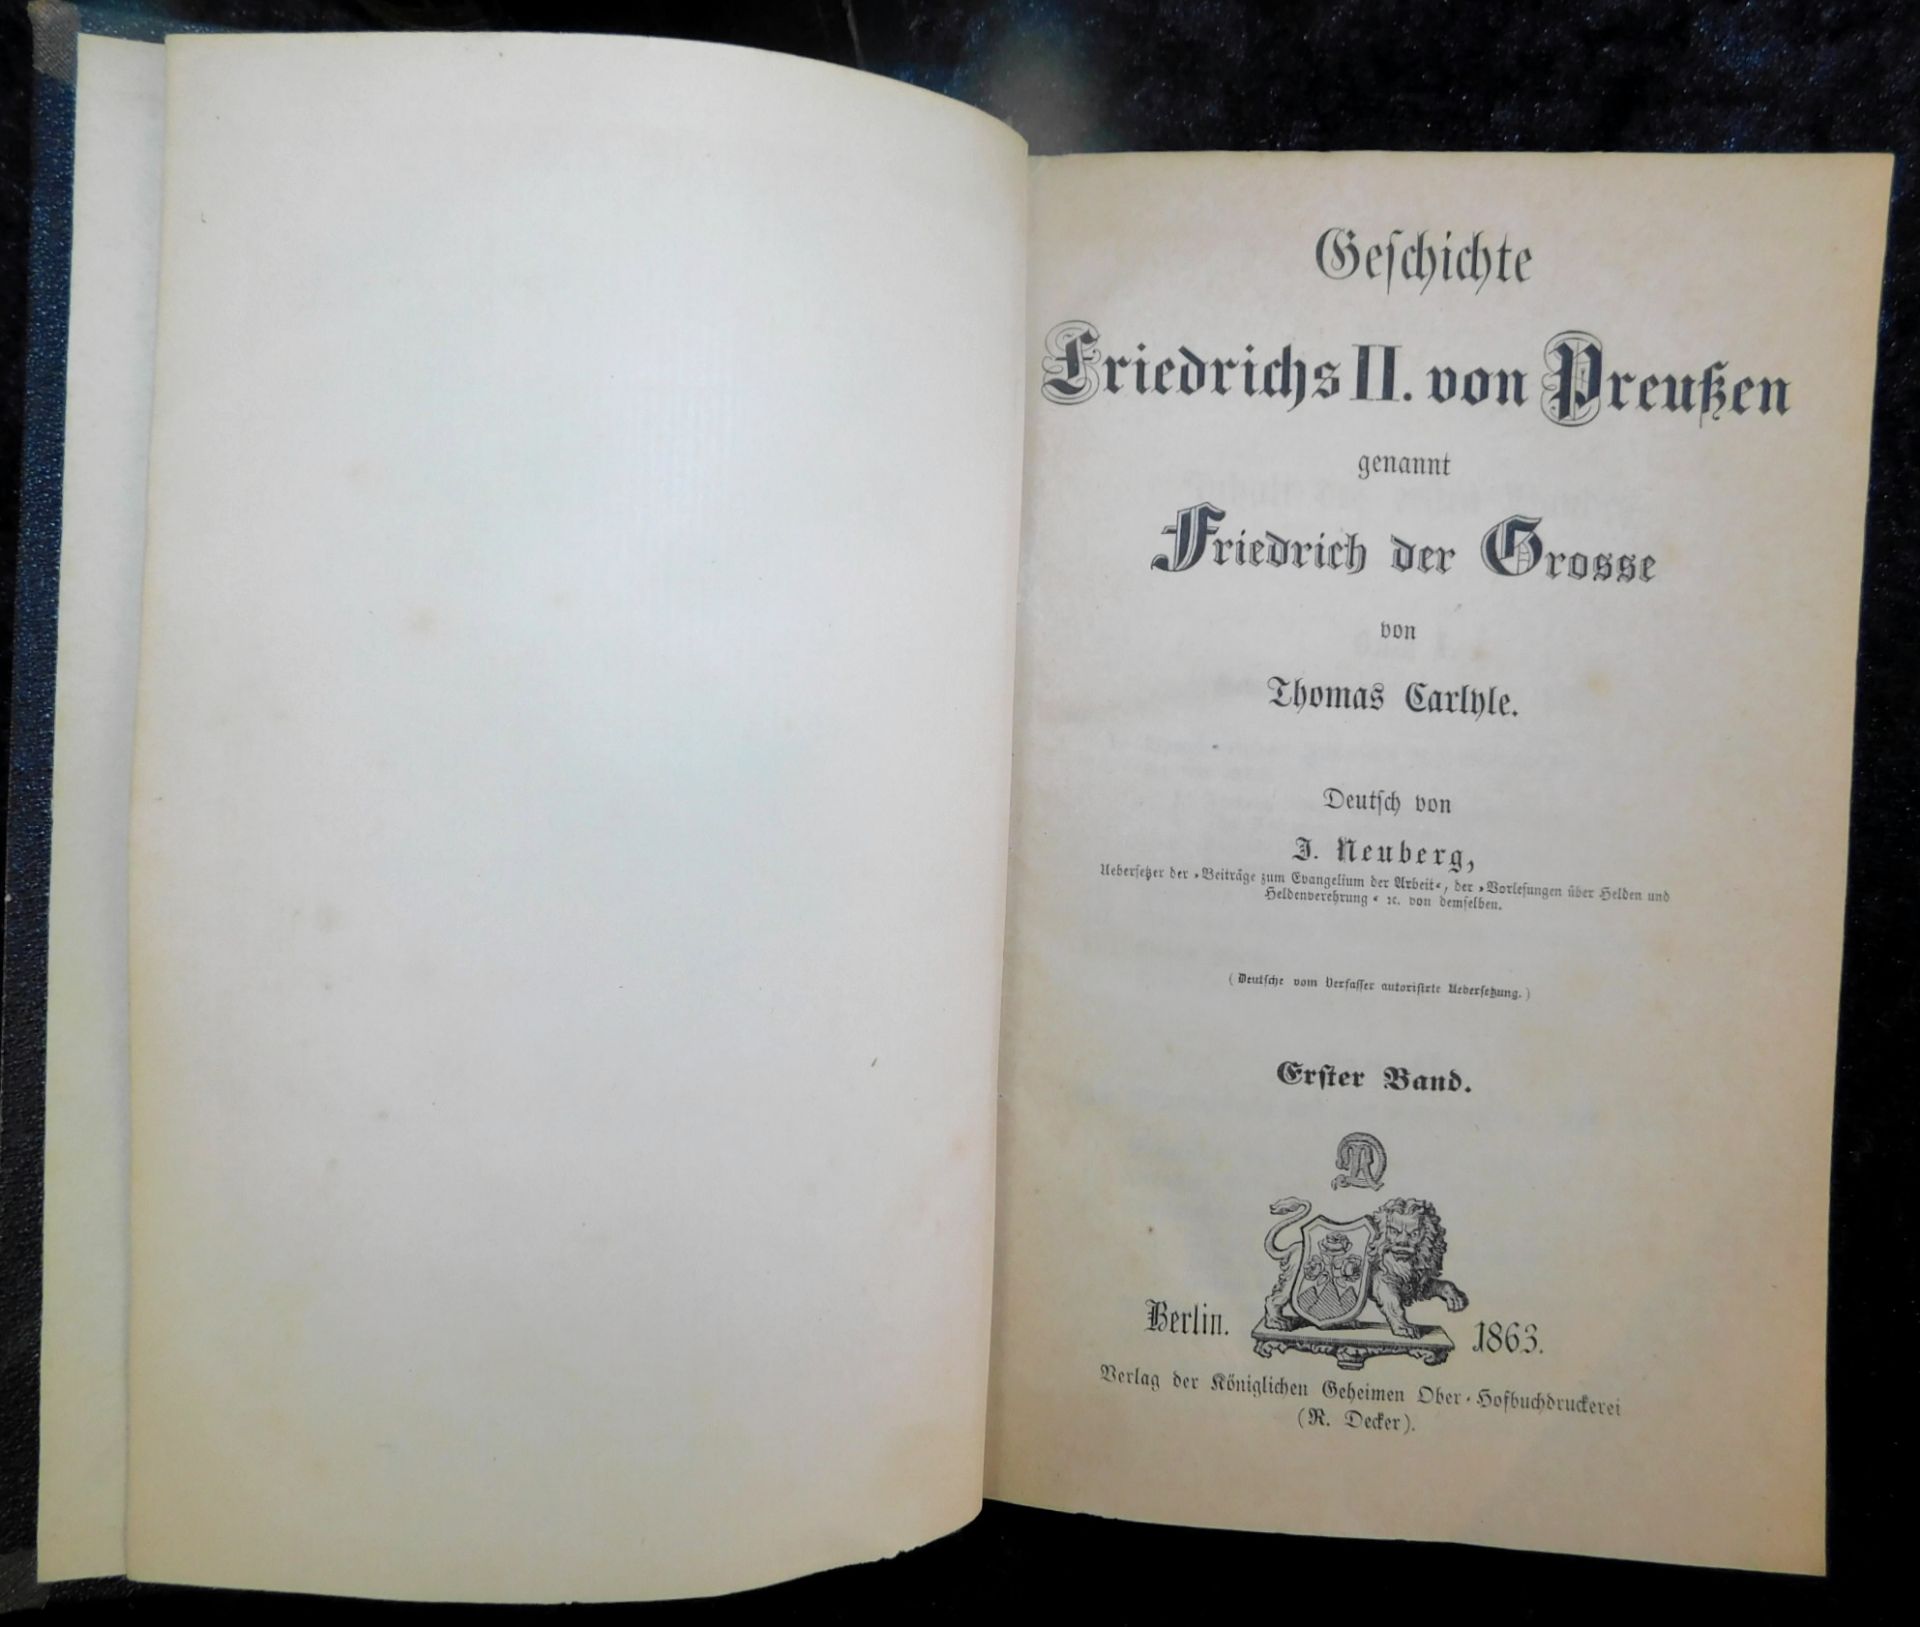 Friedrich der Große, In 5 Bänden, Thomas Carlyle, Deutsch von J. Neuberg, Verlag R. Decker, Be - Image 2 of 6